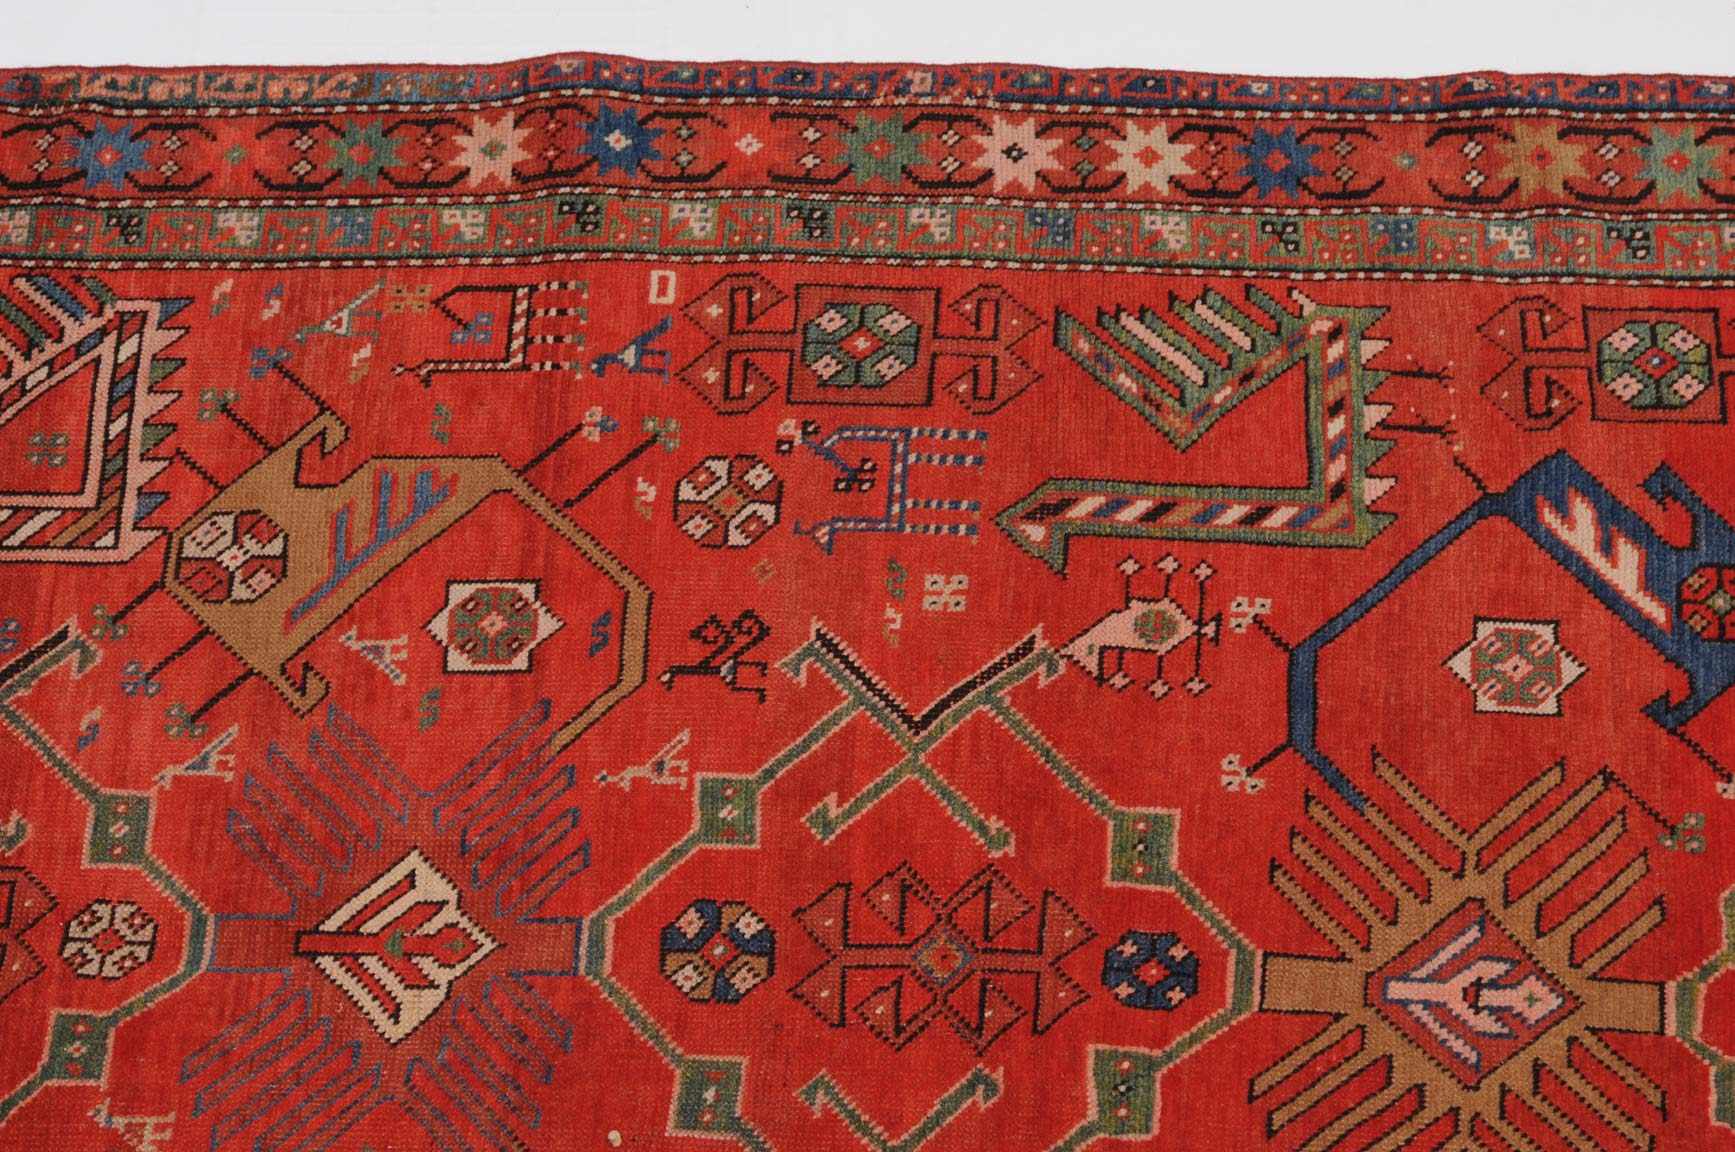 Karabagh S-Kaukasus, datiert mit "1904". Das rote Mittelfeld ist mit stilisierten Akstafa-Vögeln - Image 8 of 9